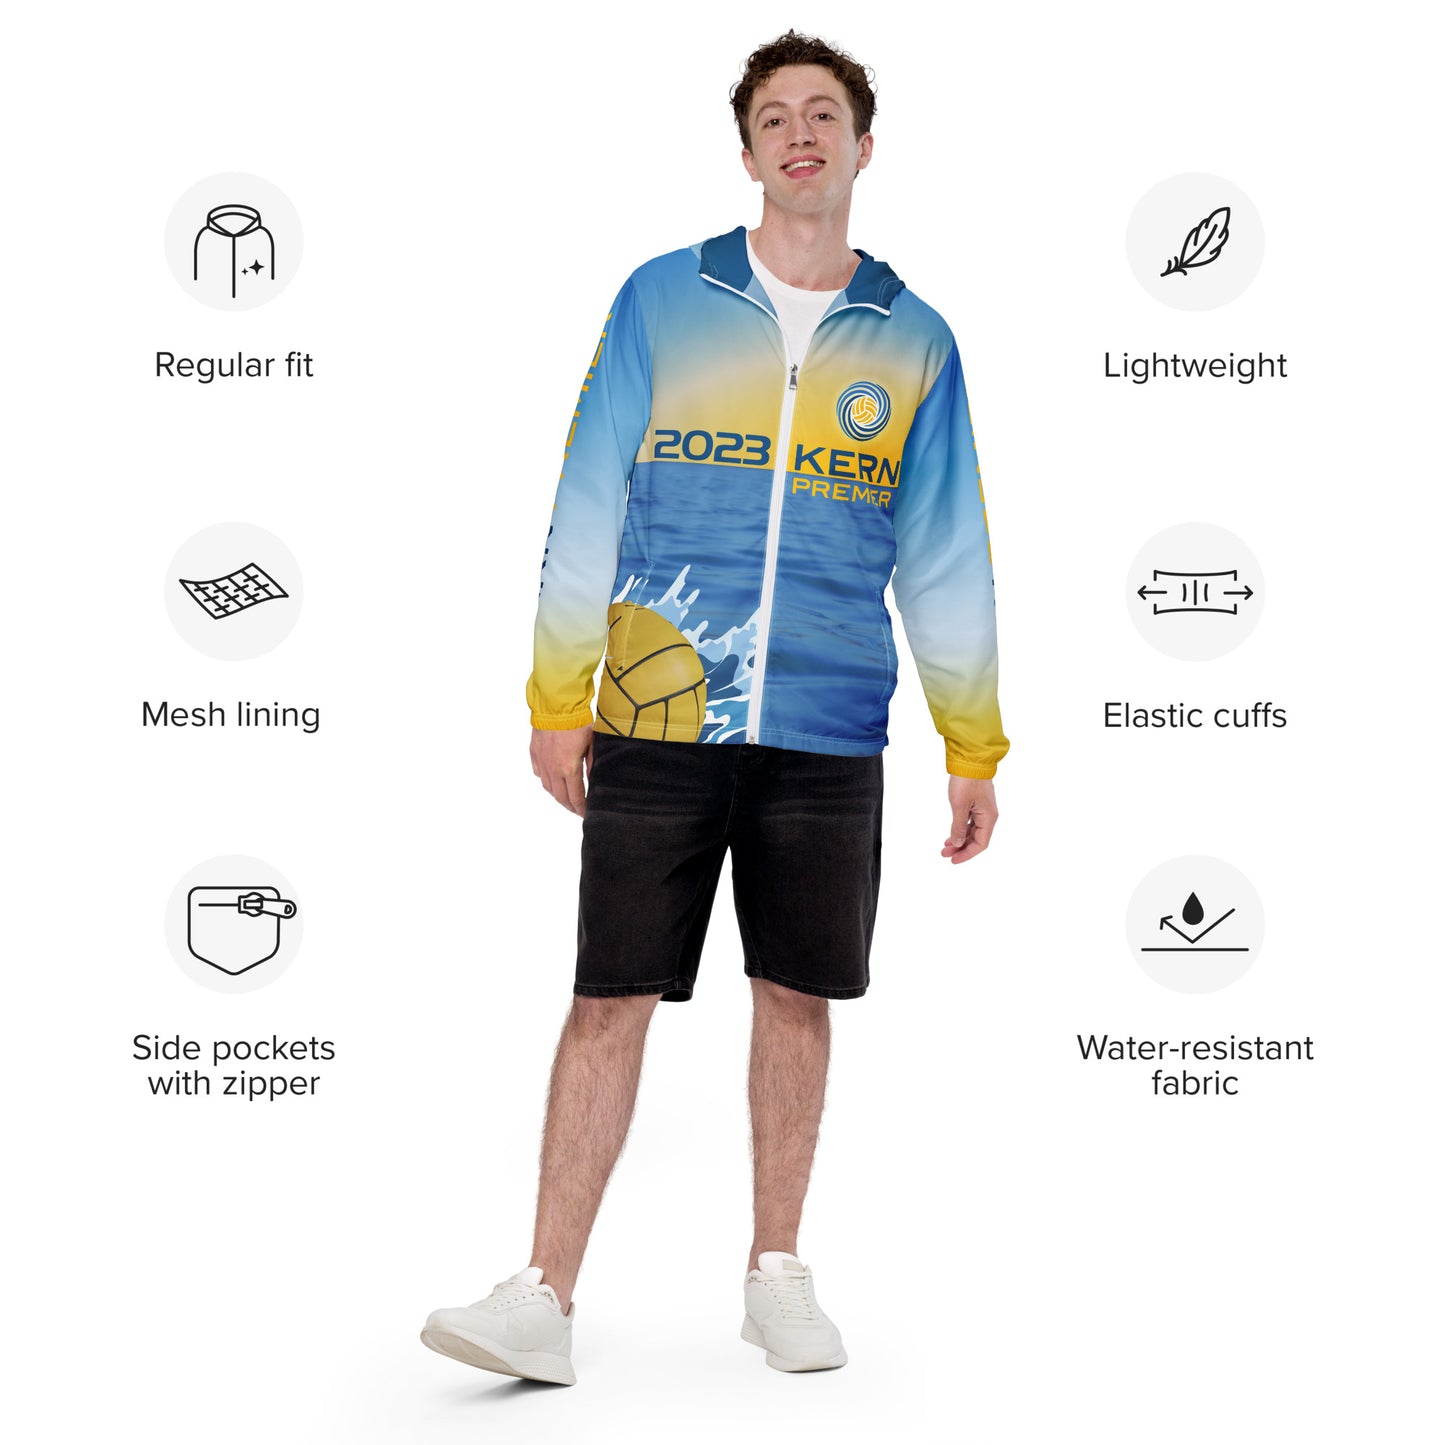 Kern Premier - Team Design - Men’s hoodie windbreaker